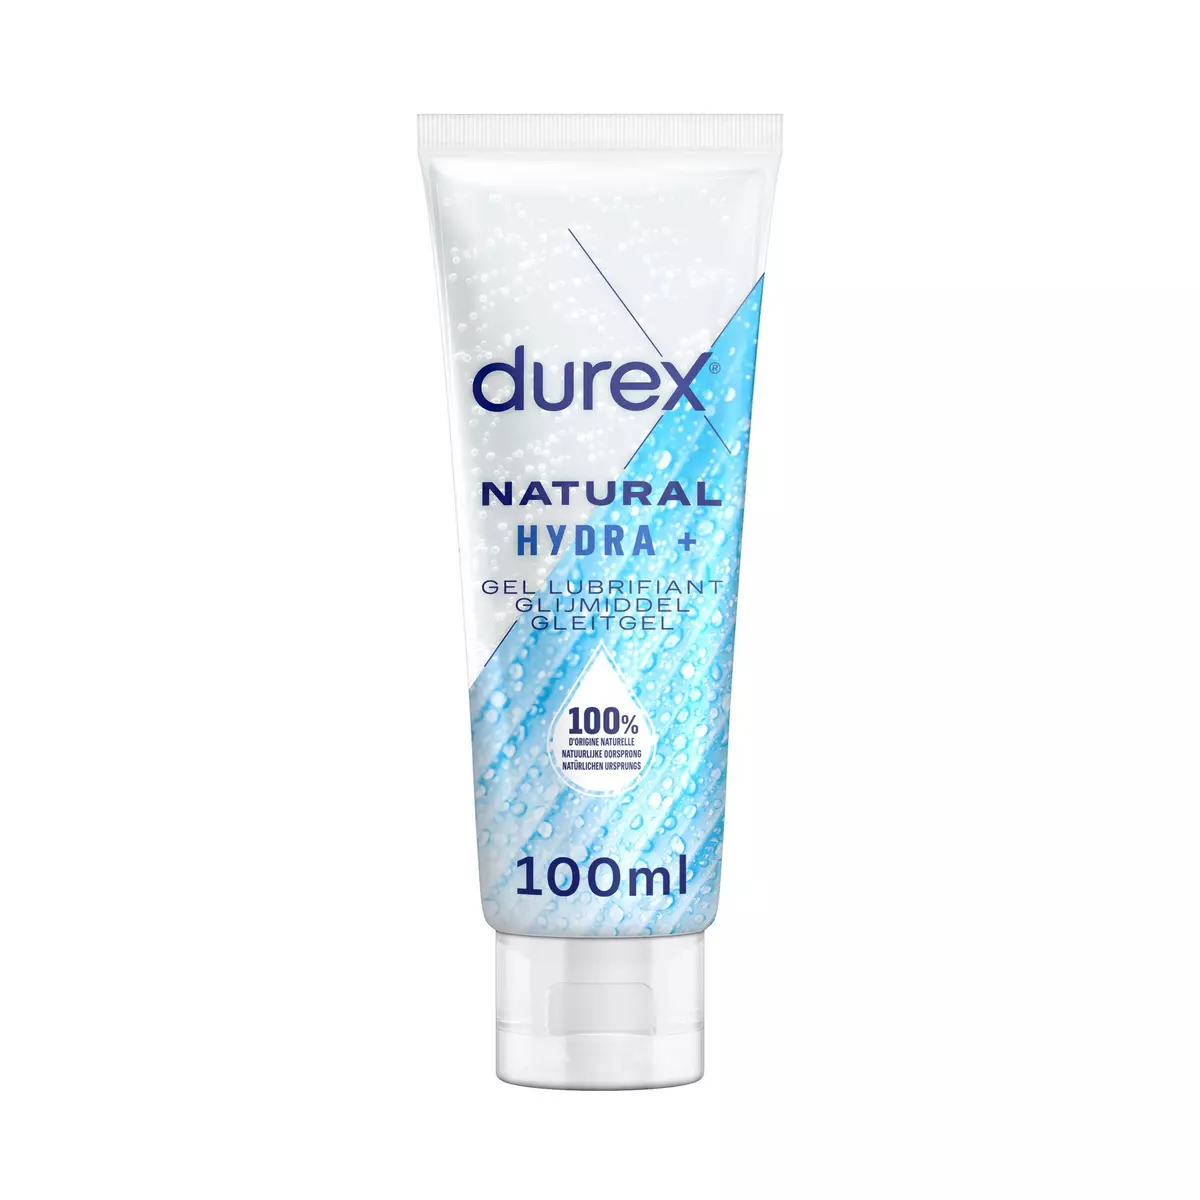 DUREX Gel lubrifiant naturel hydra+ 100ml